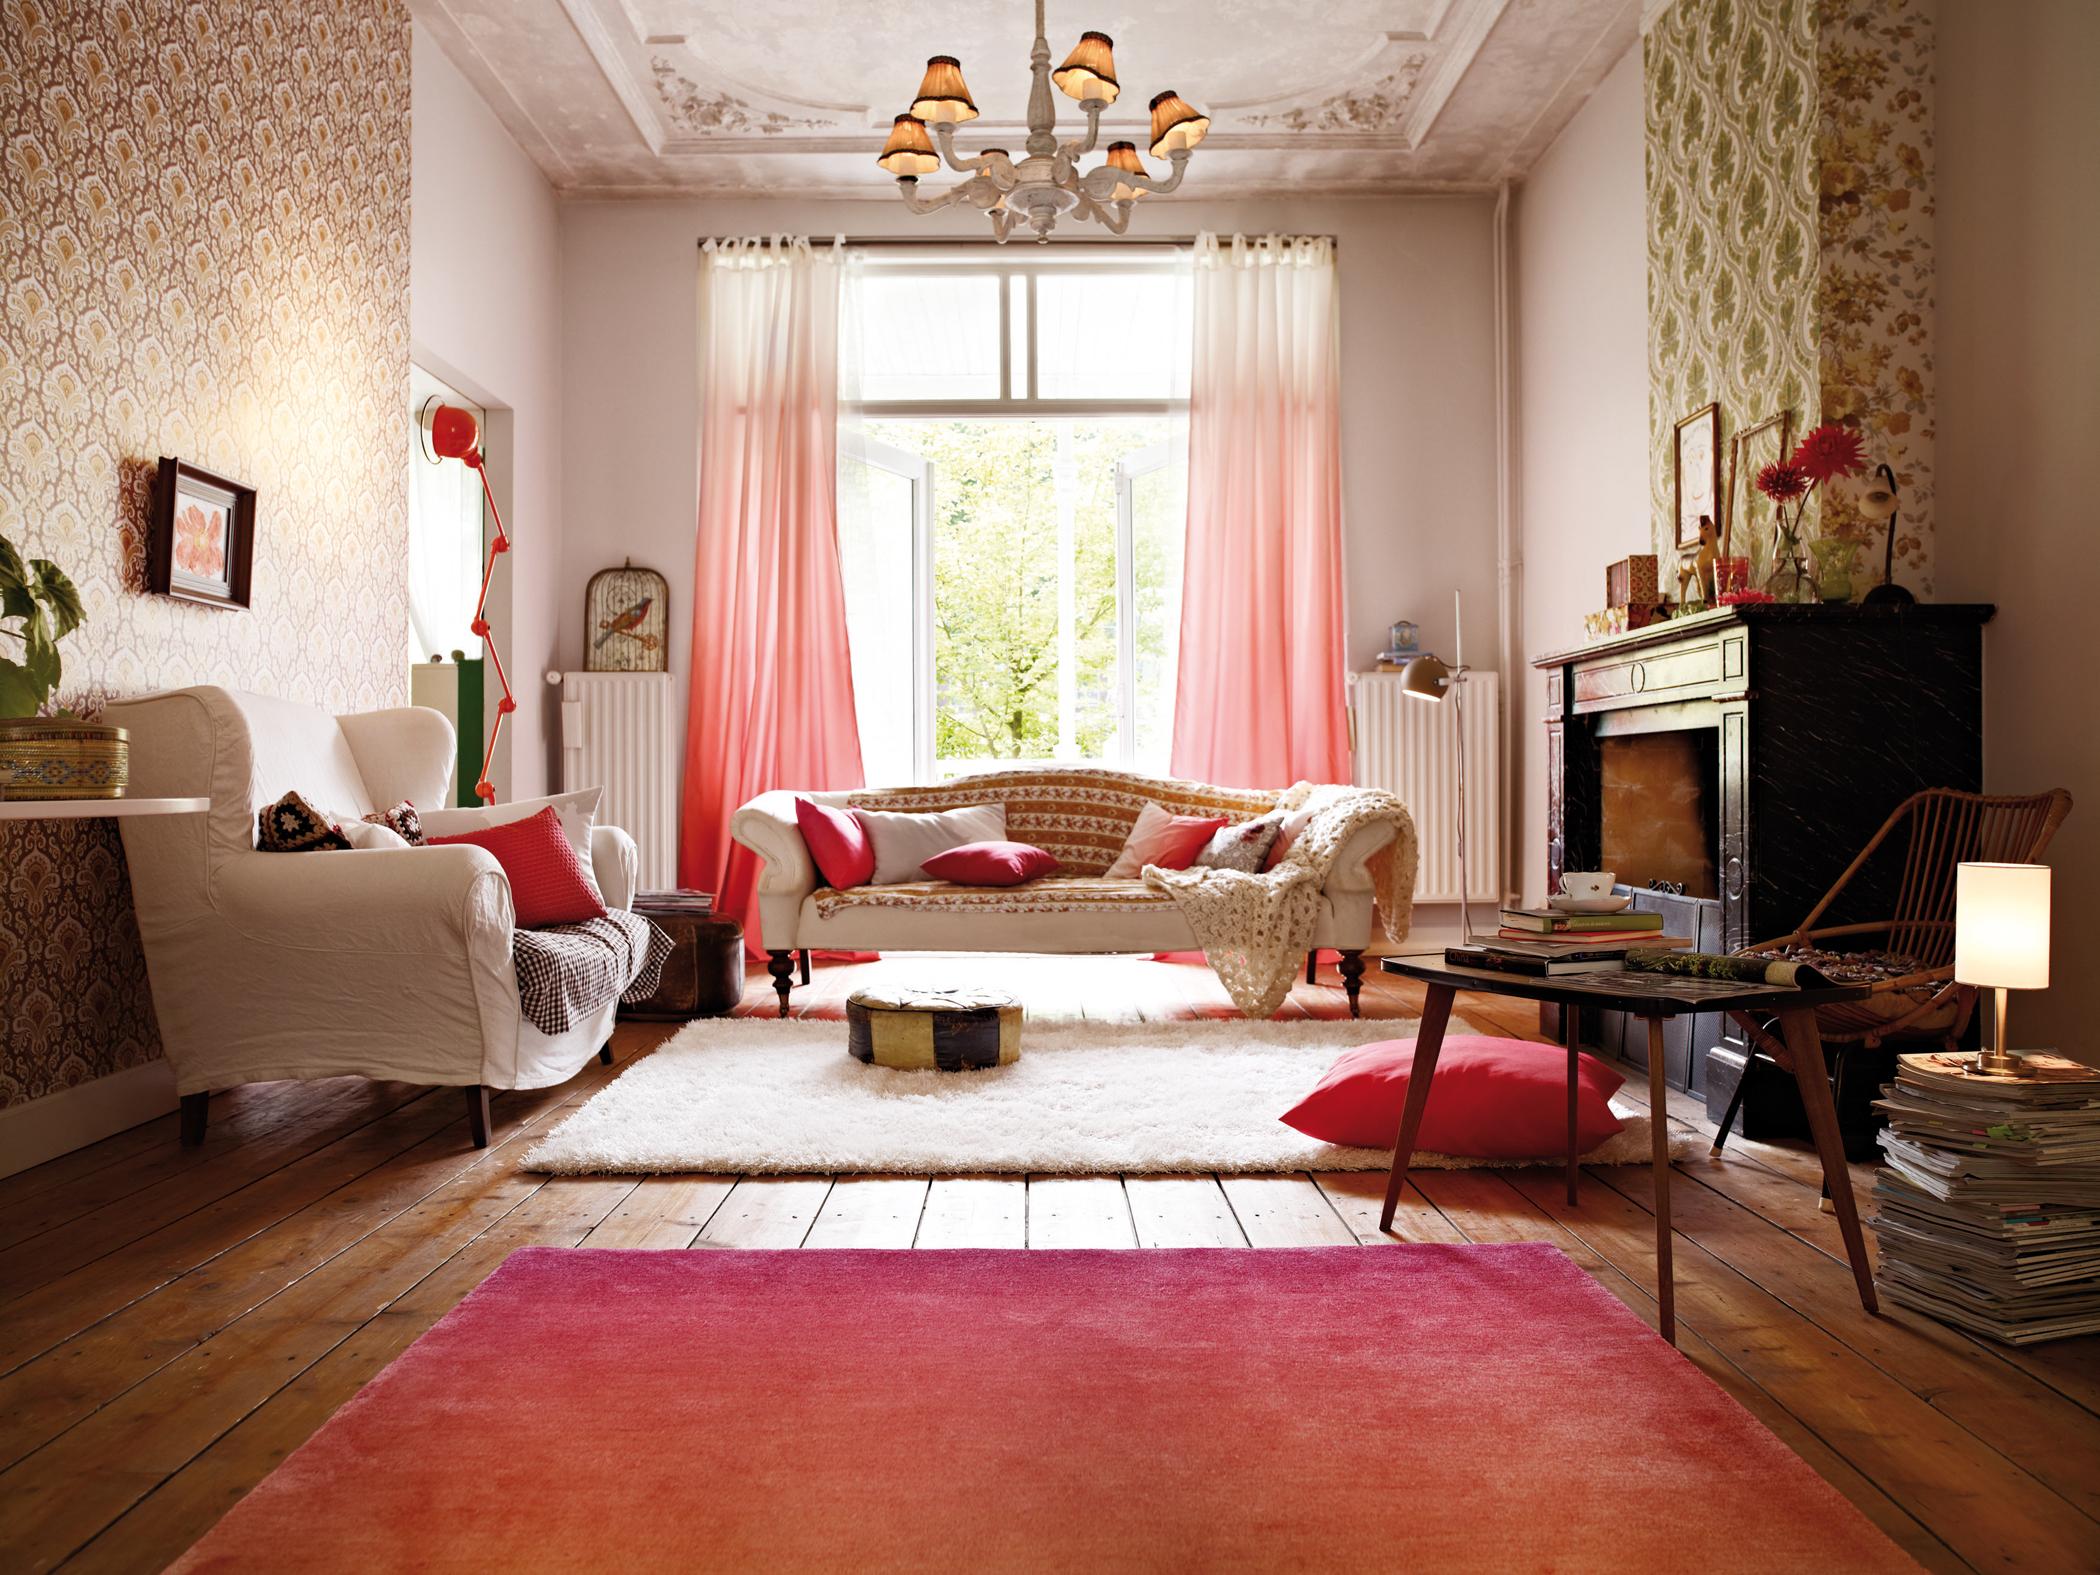 Farbverläufe in Rottönen #wohnzimmer #kronleuchter #gardine #mustertapete #farbverlauf ©Esprit Home